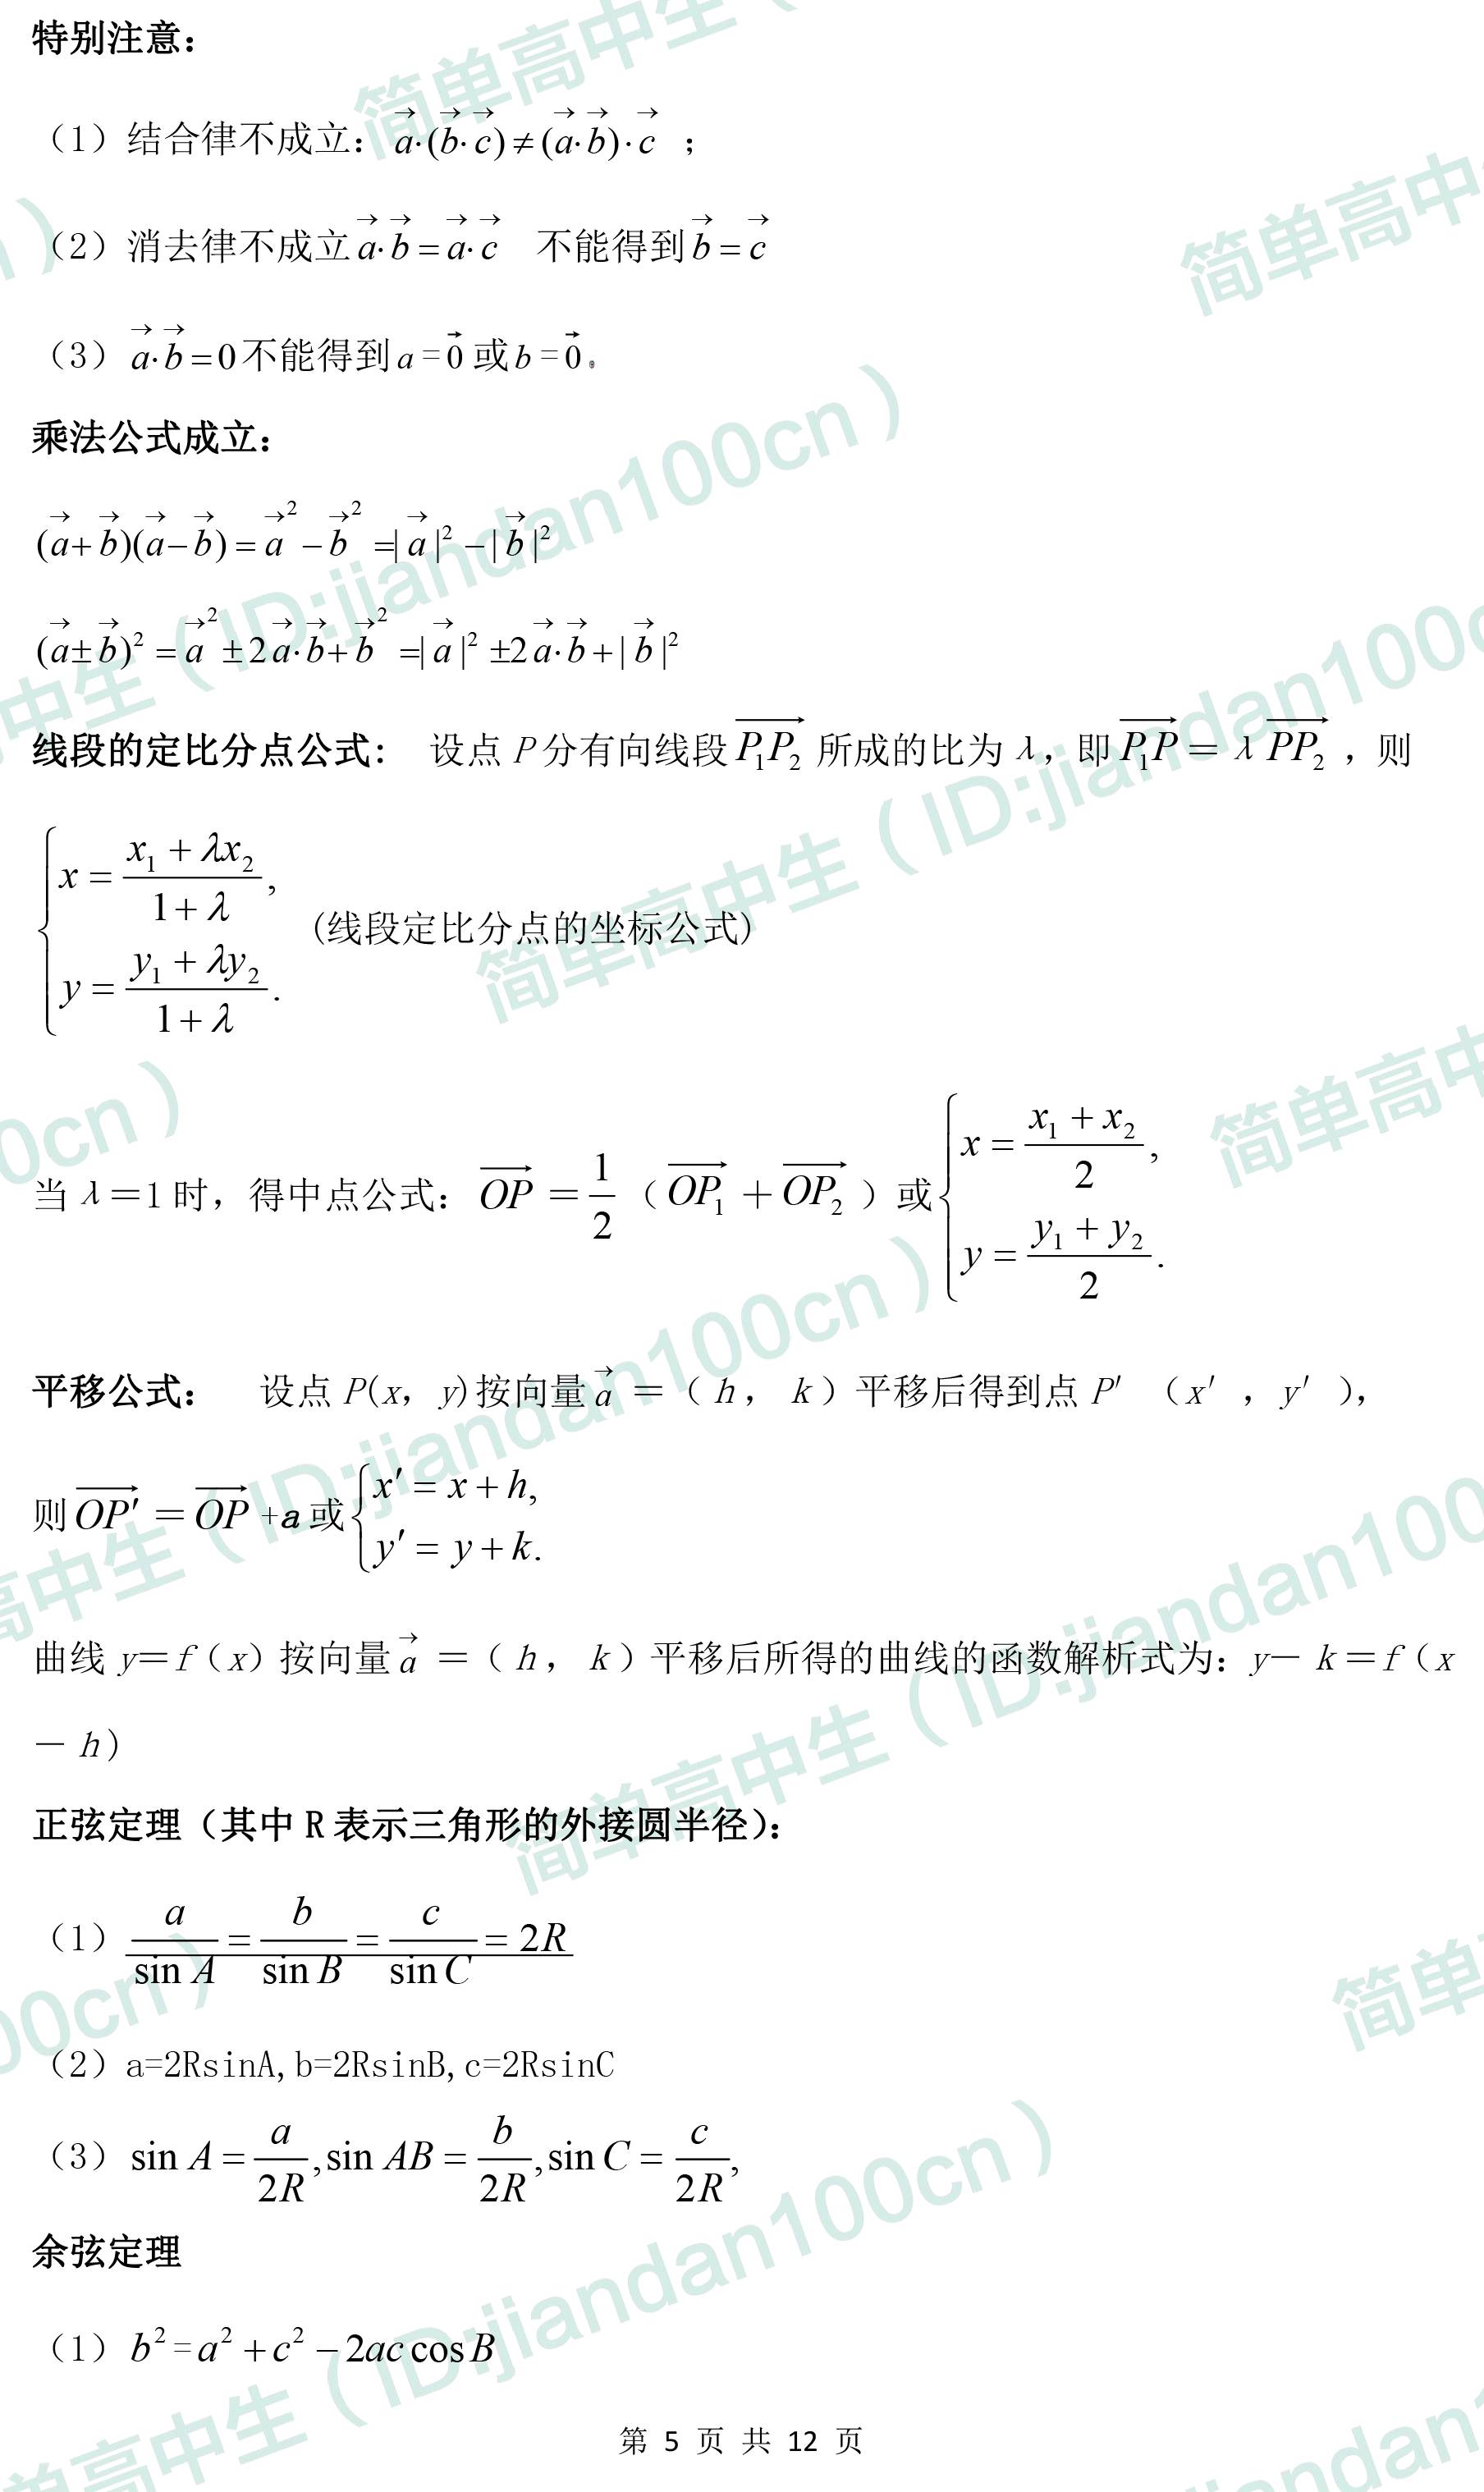 [转载]高中数学平面向量的知识点 定理 公式都在这里了,请收好!